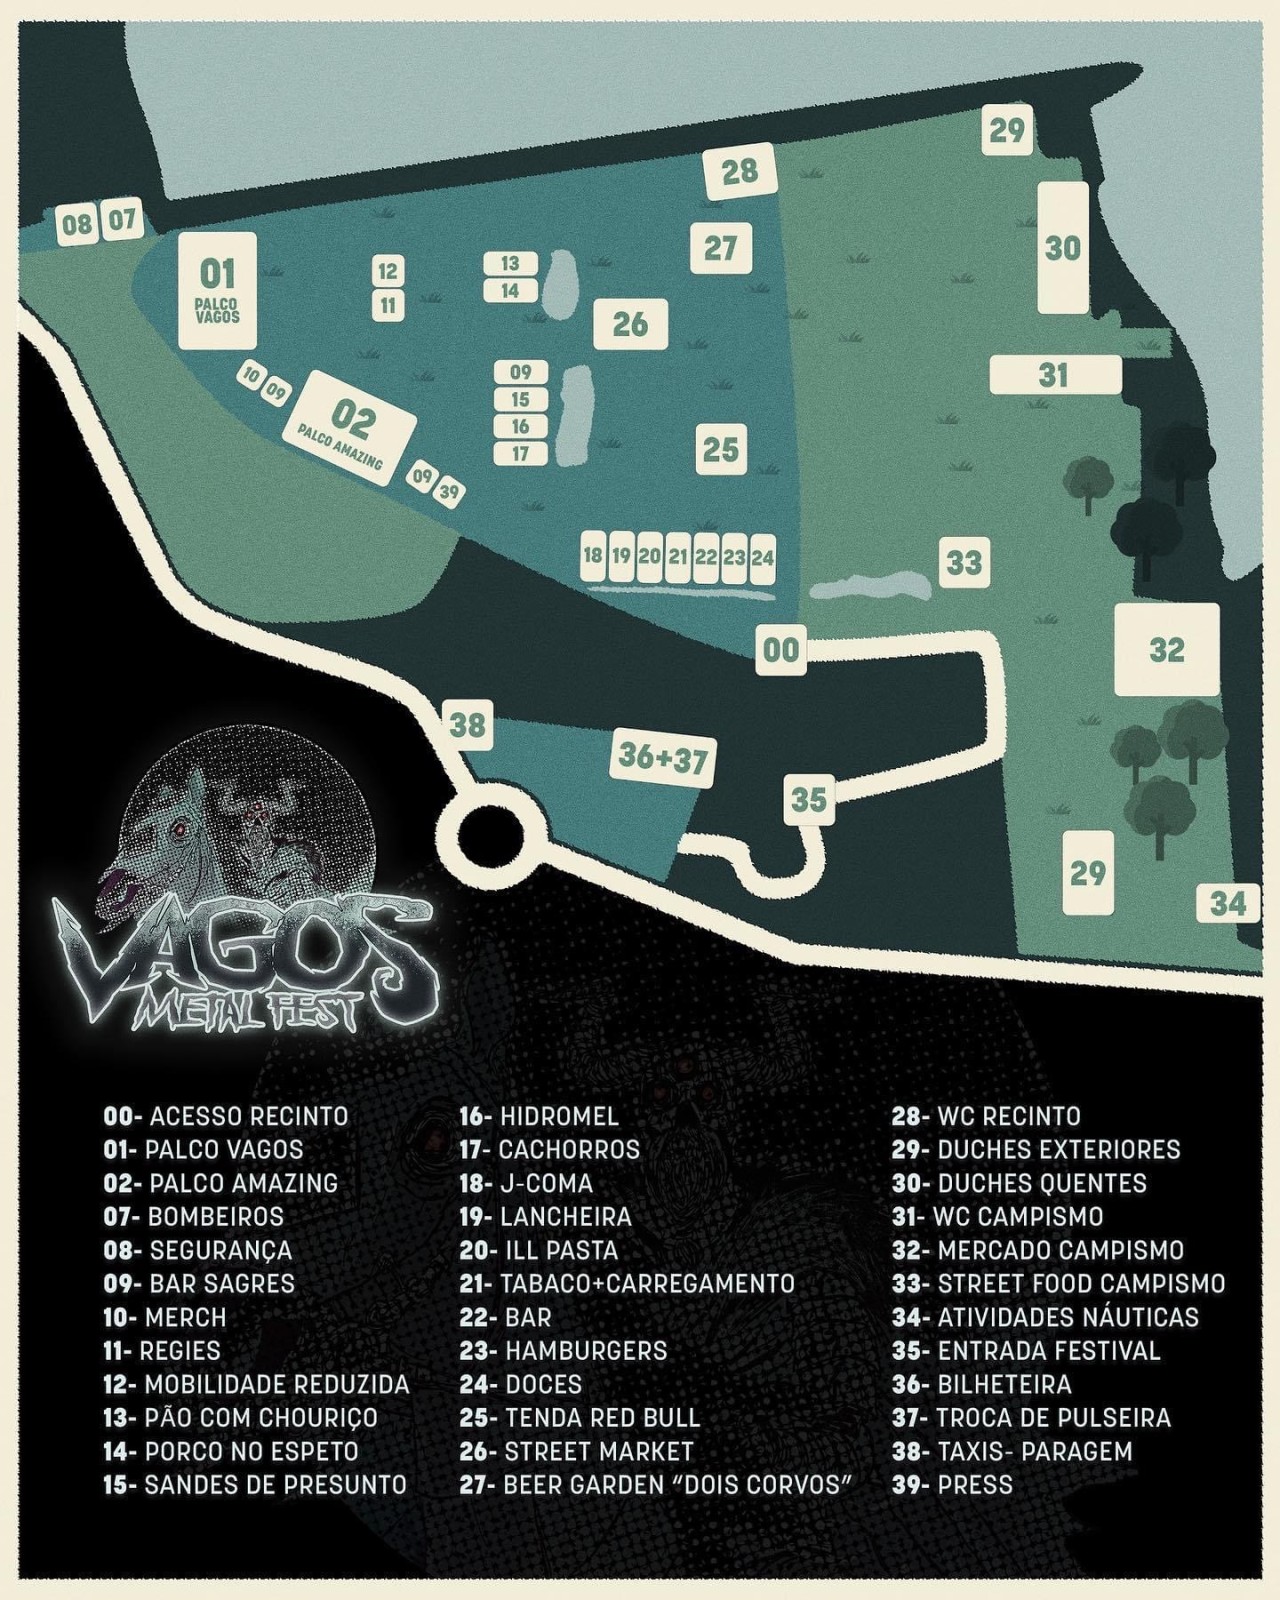 Vagos Metal Fest 2022 - Mapa do recinto